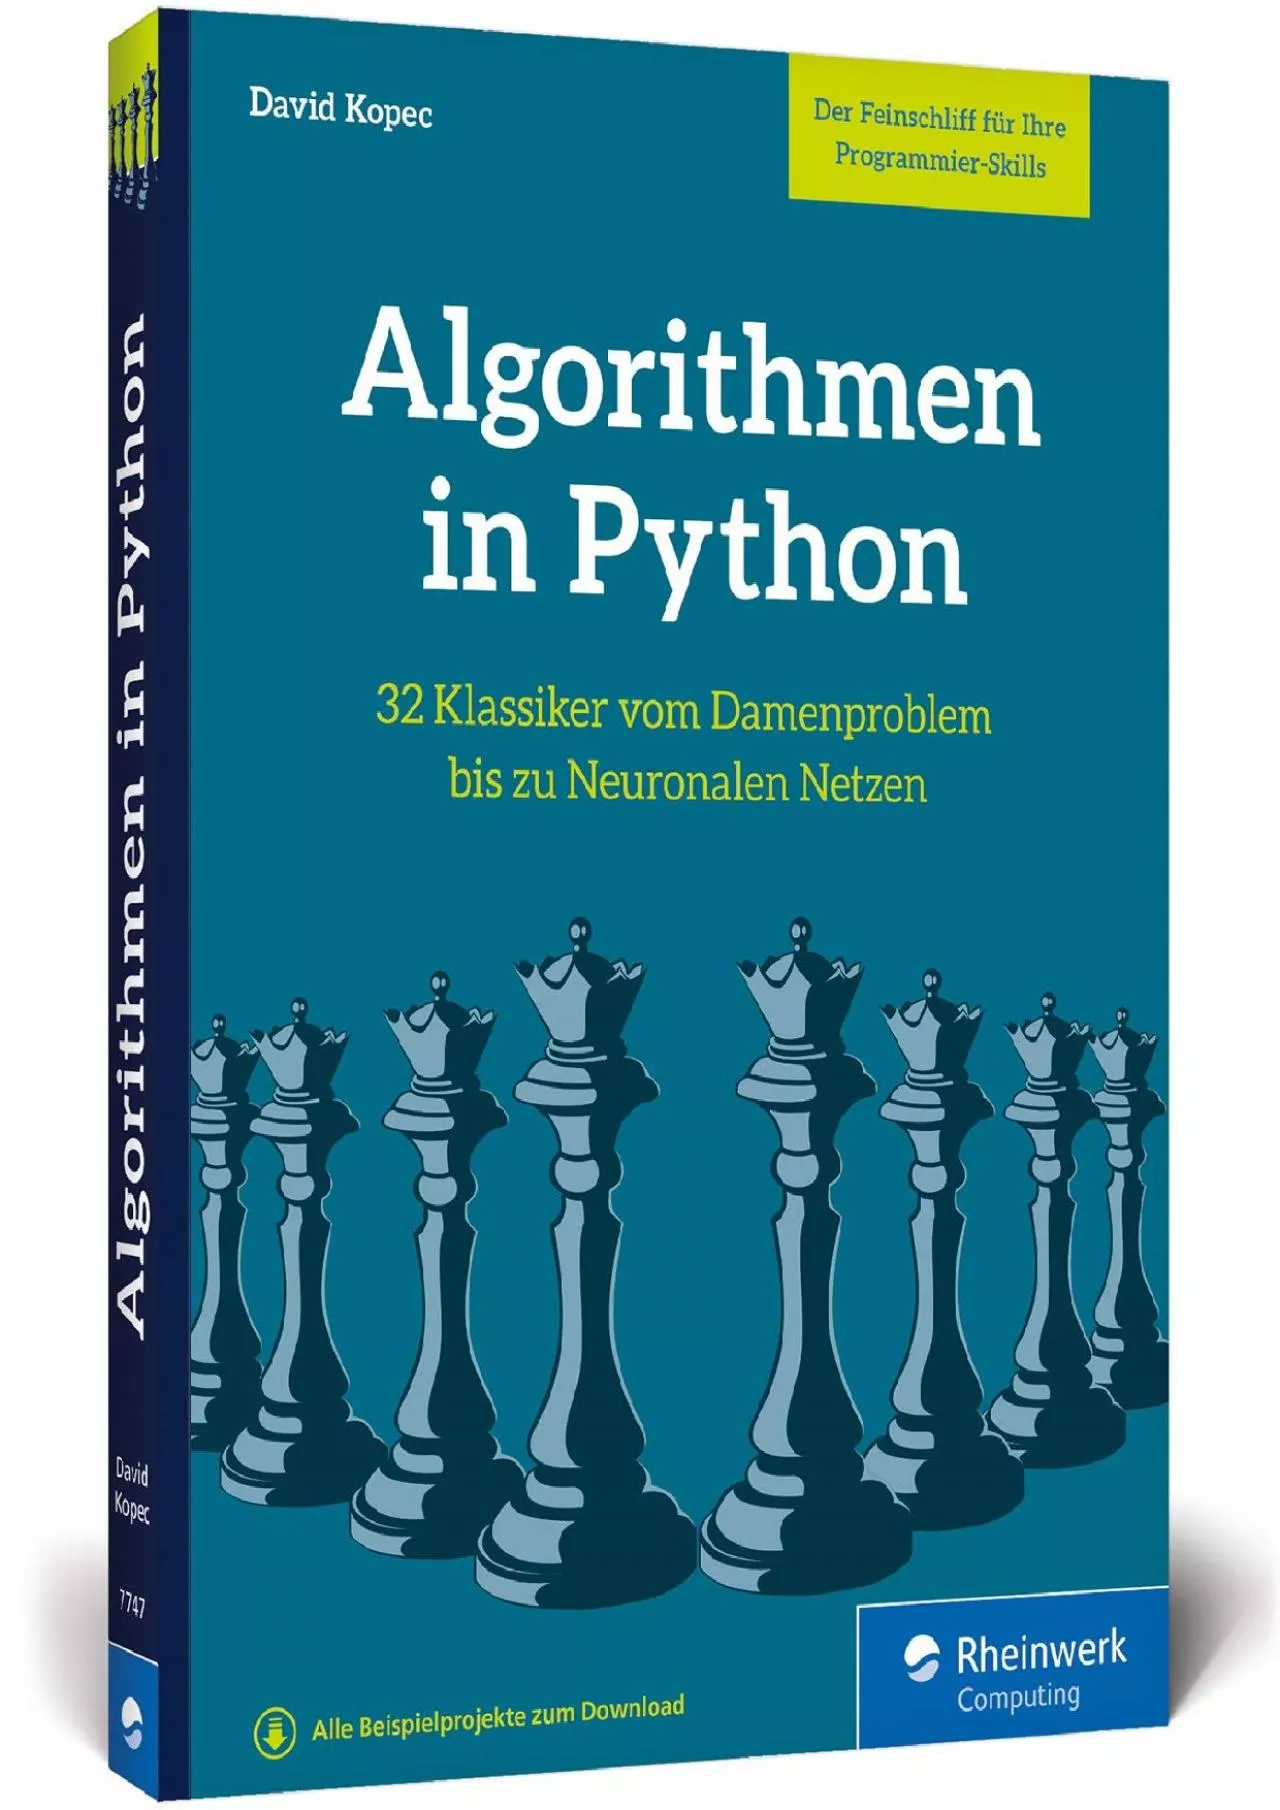 [FREE]-Algorithmen in Python: Das Buch zum Programmieren trainieren. 32 Klassiker der